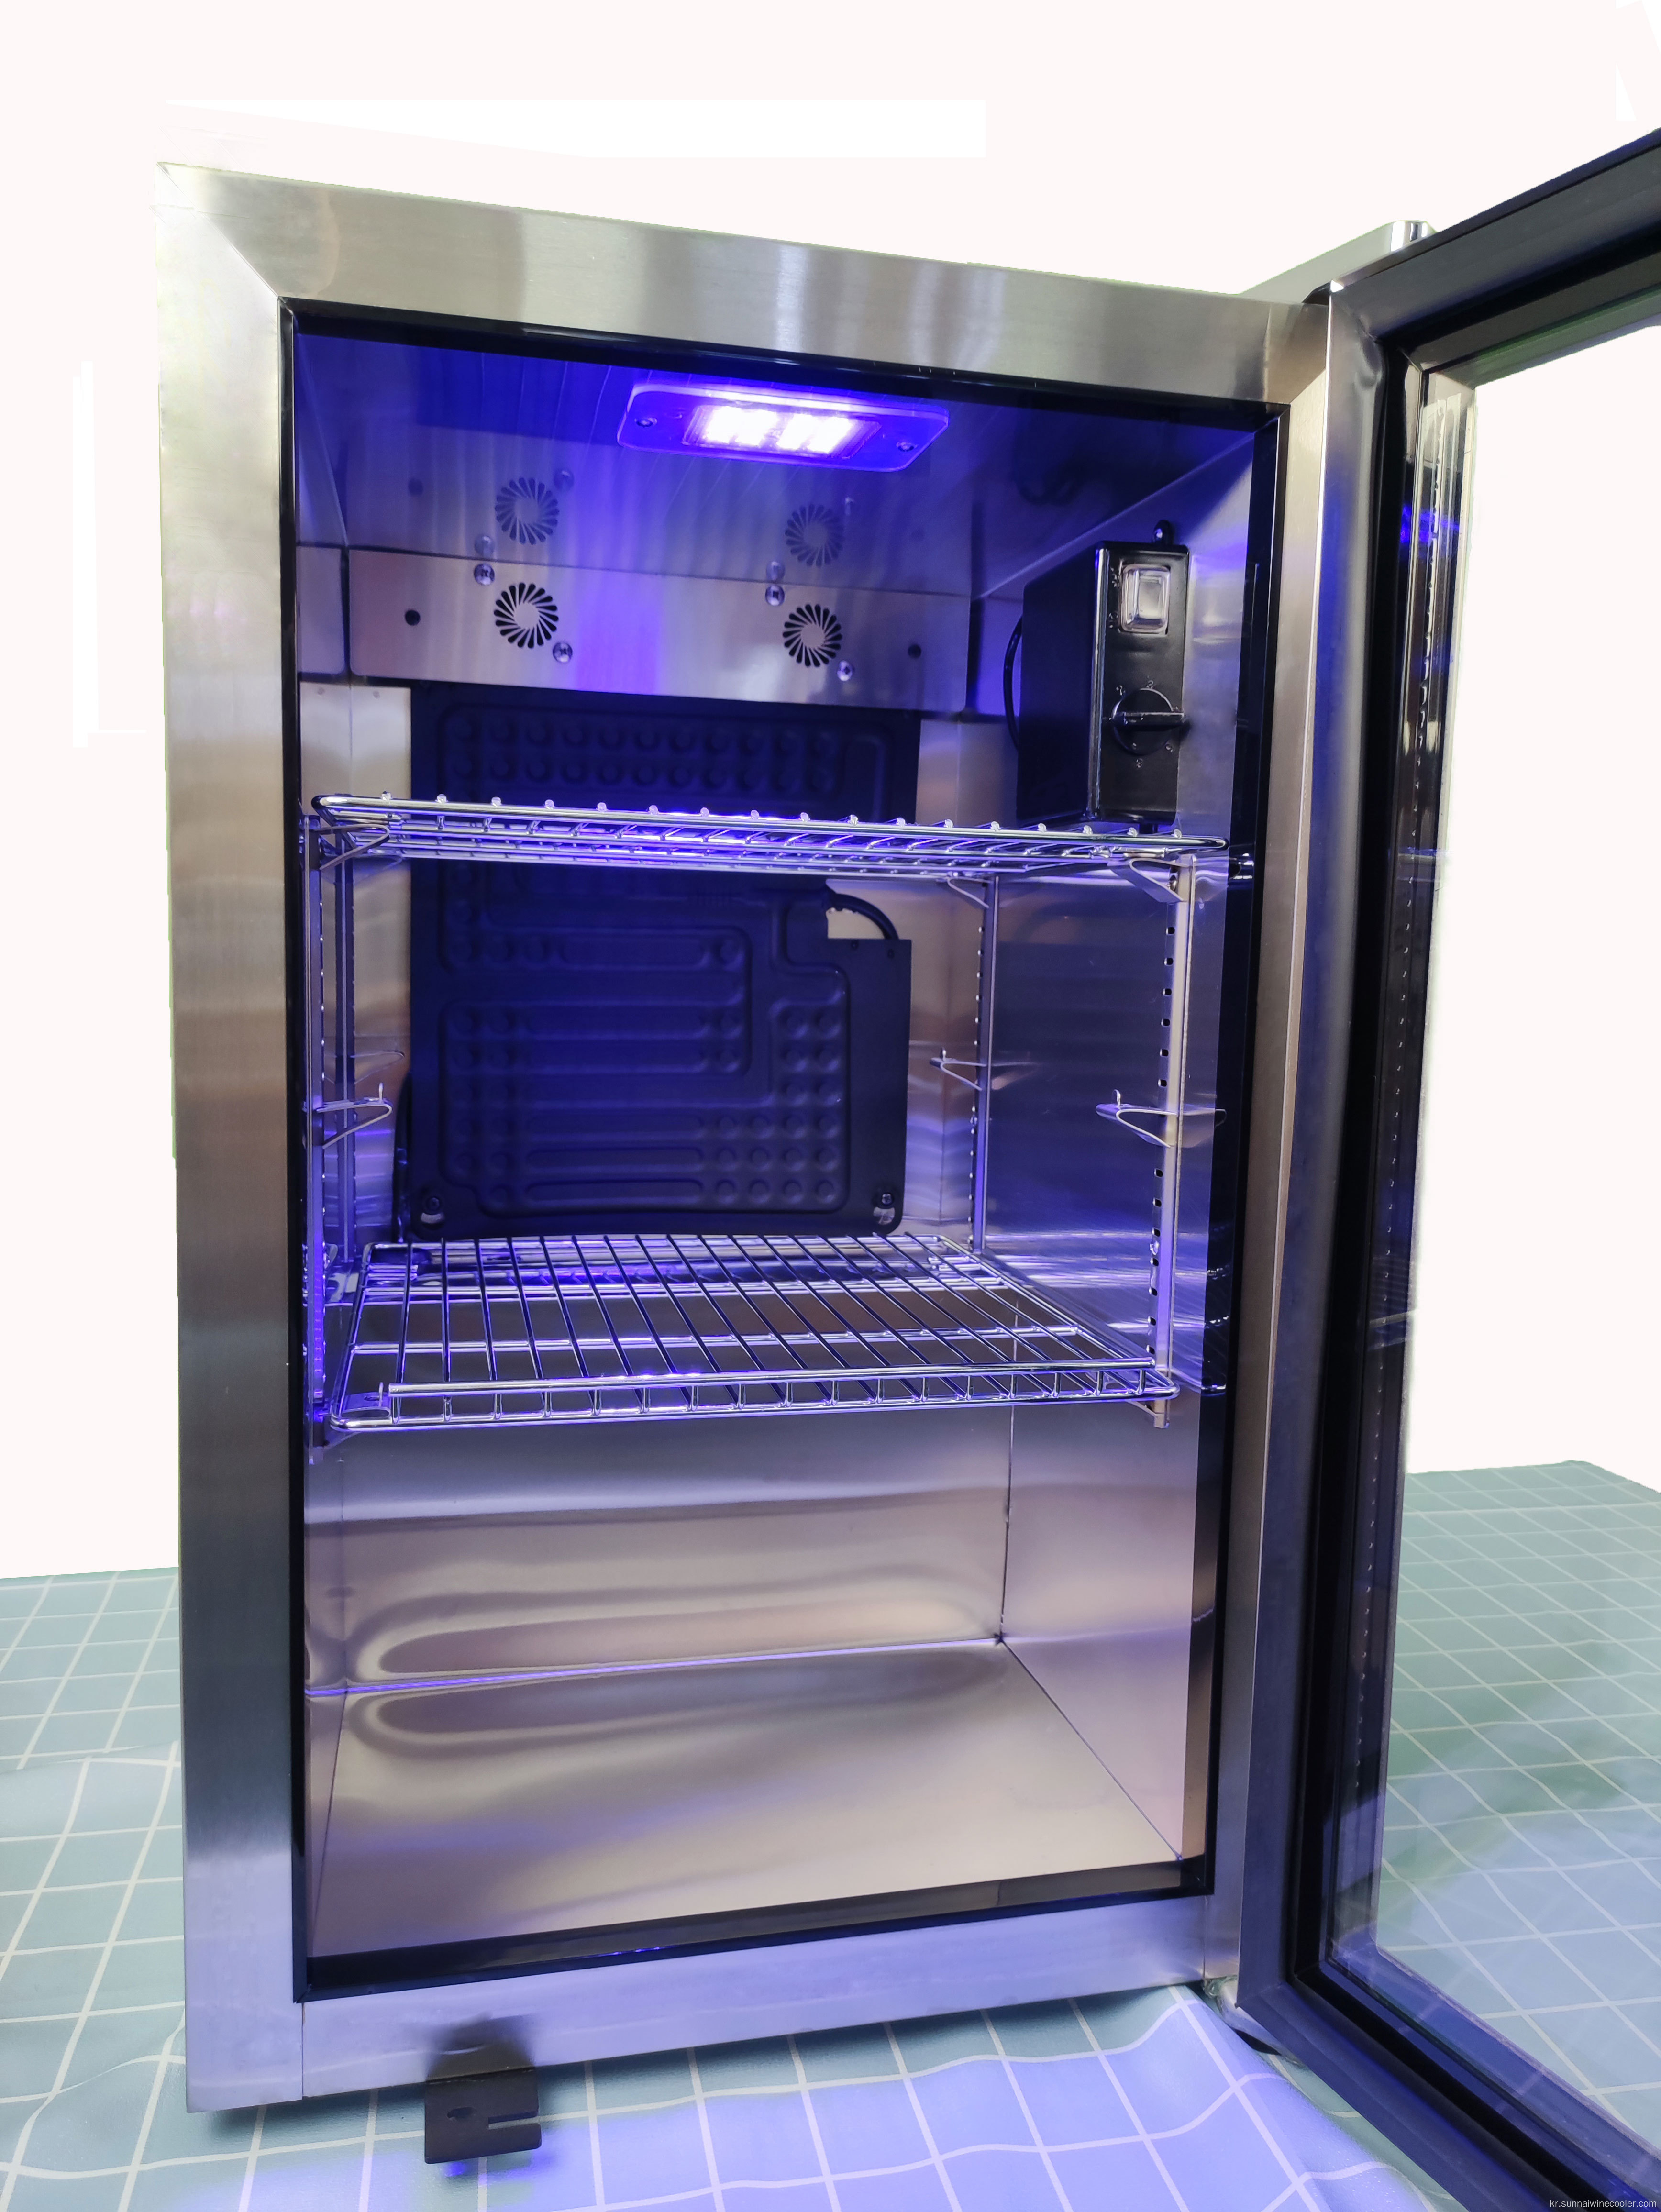 OEM 차가운 음료 냉장고 단일 유리 문 냉장고